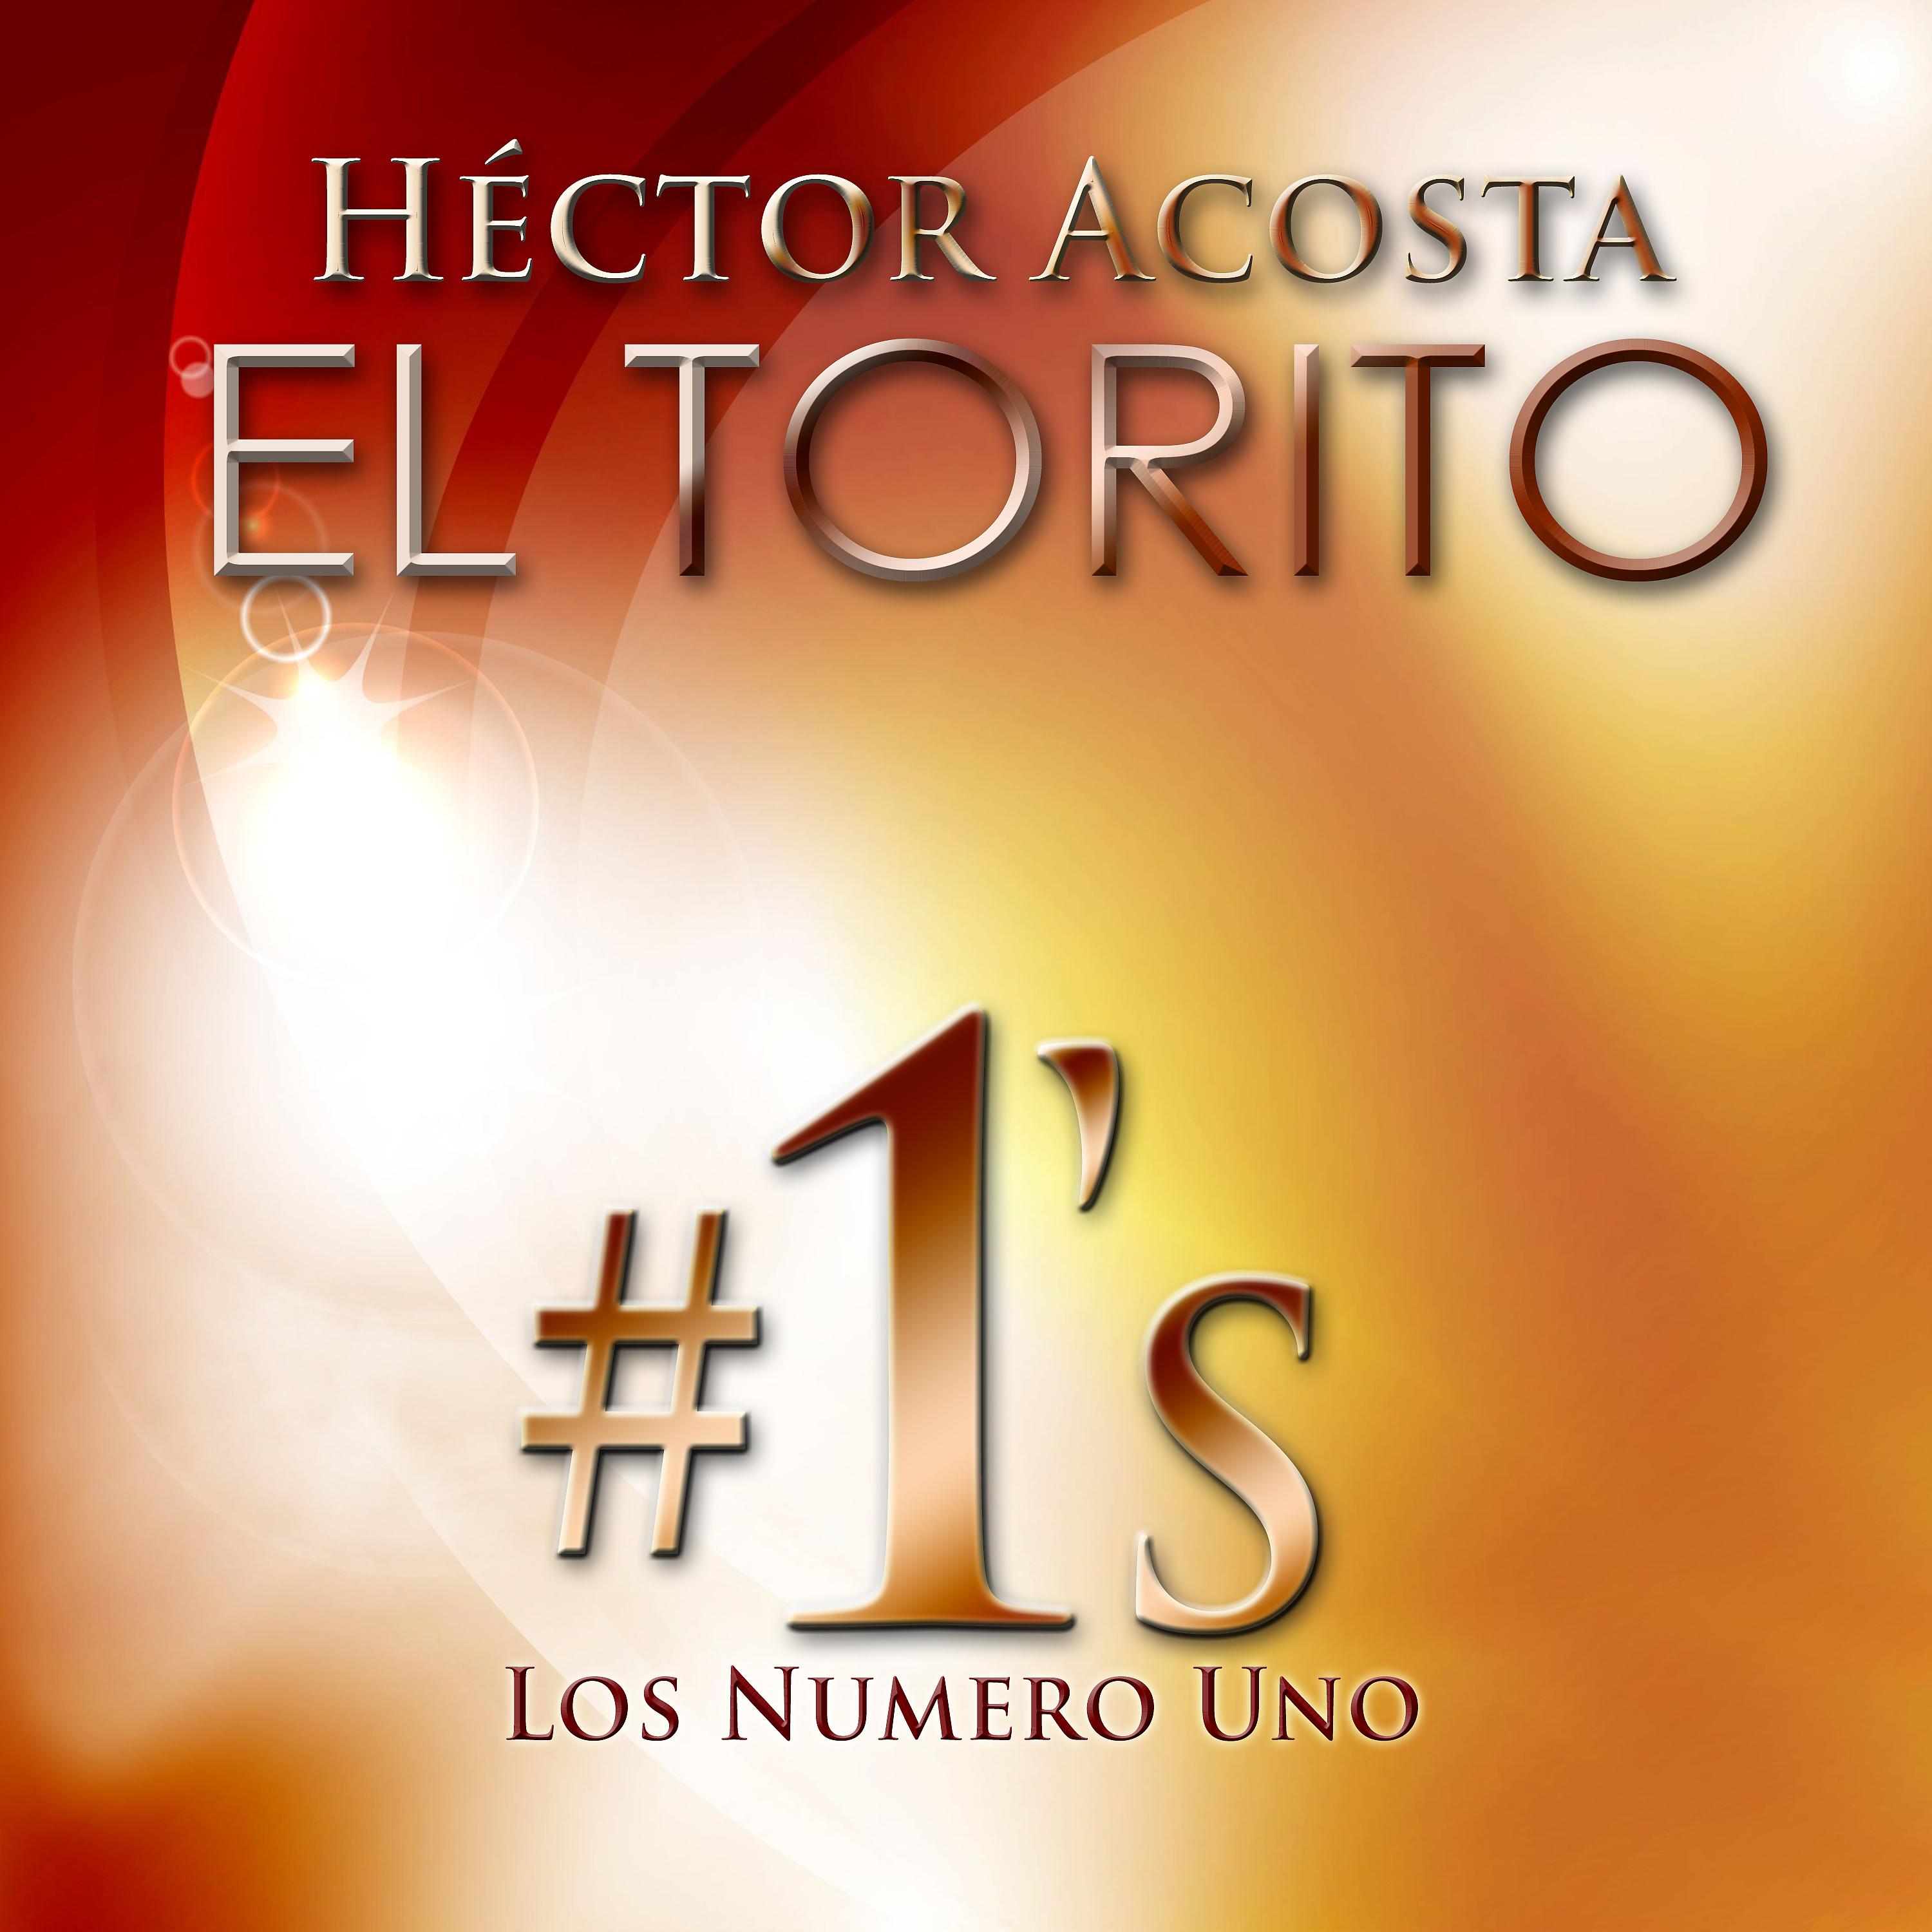 Постер альбома Hector Acosta "El Torito" Los Número Uno